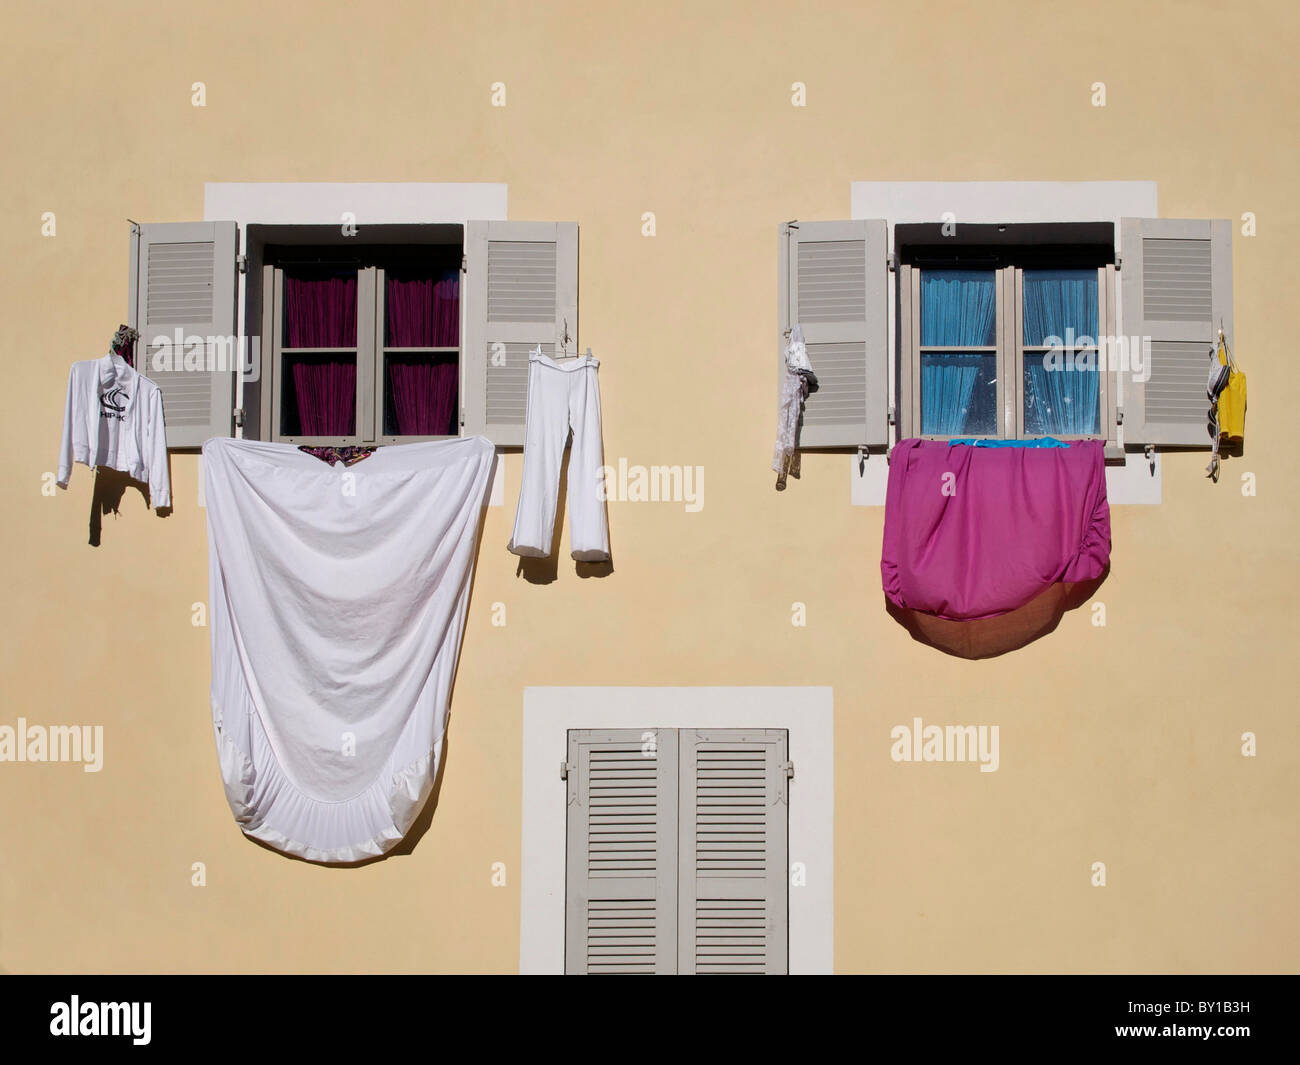 Les draps et les vêtements suspendus à sécher les fenêtres d'une maison dans une rue dans le sud de la France Banque D'Images